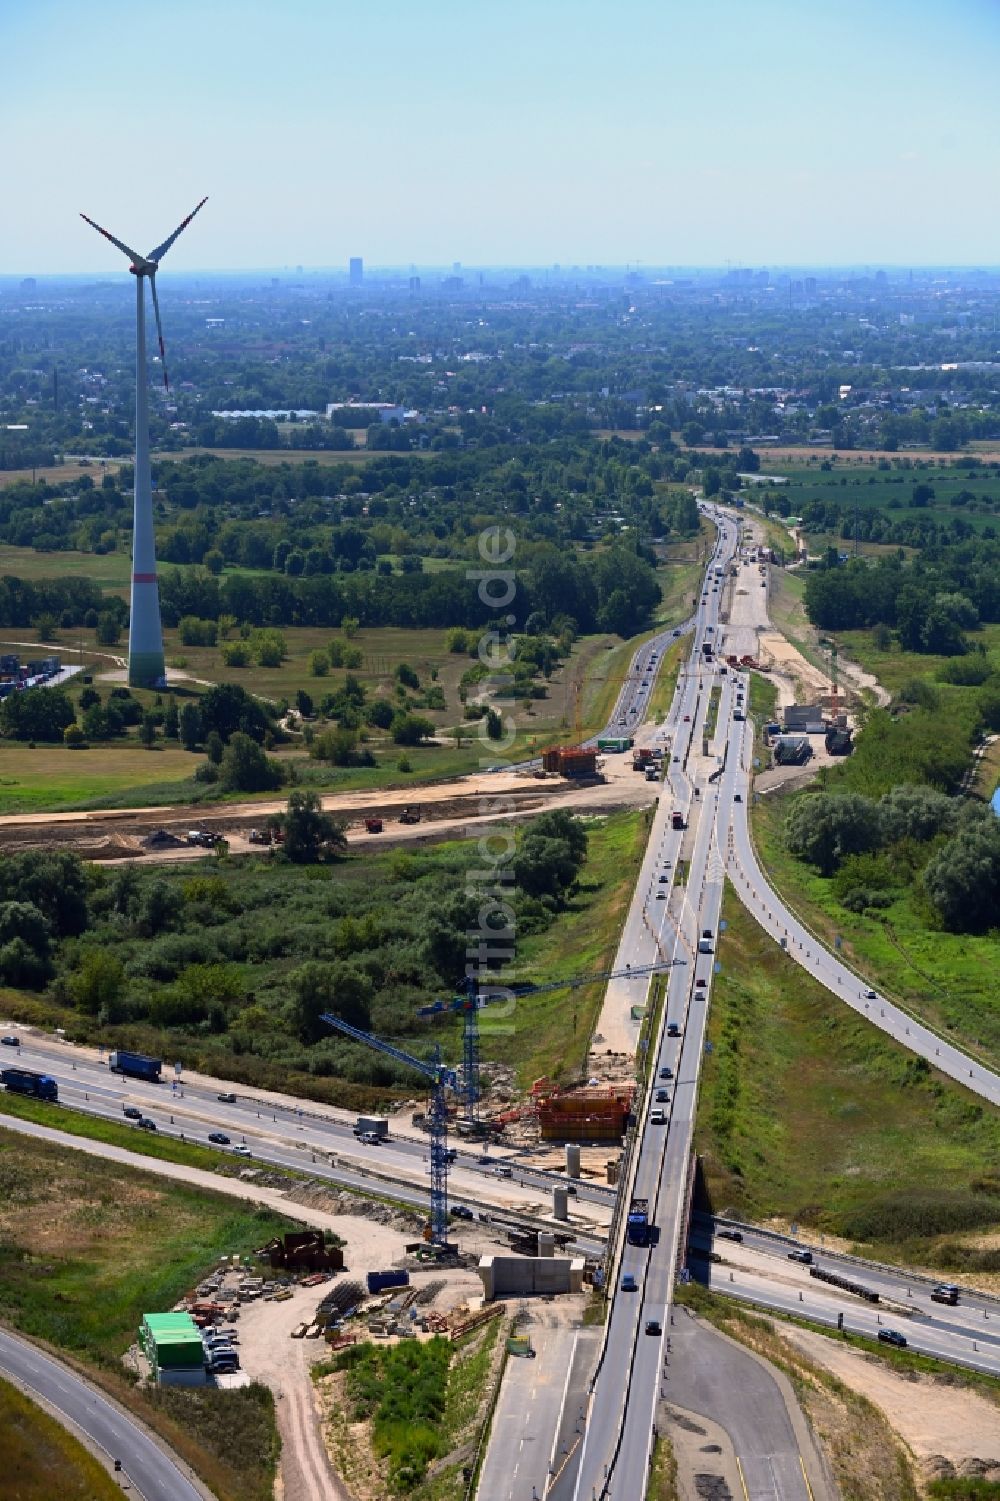 Luftaufnahme Schönerlinde - Baustelle an der Verkehrsführung am Autobahnkreuz der BAB A114 - A10 - Dreieck Pankow in Schönerlinde im Bundesland Brandenburg, Deutschland